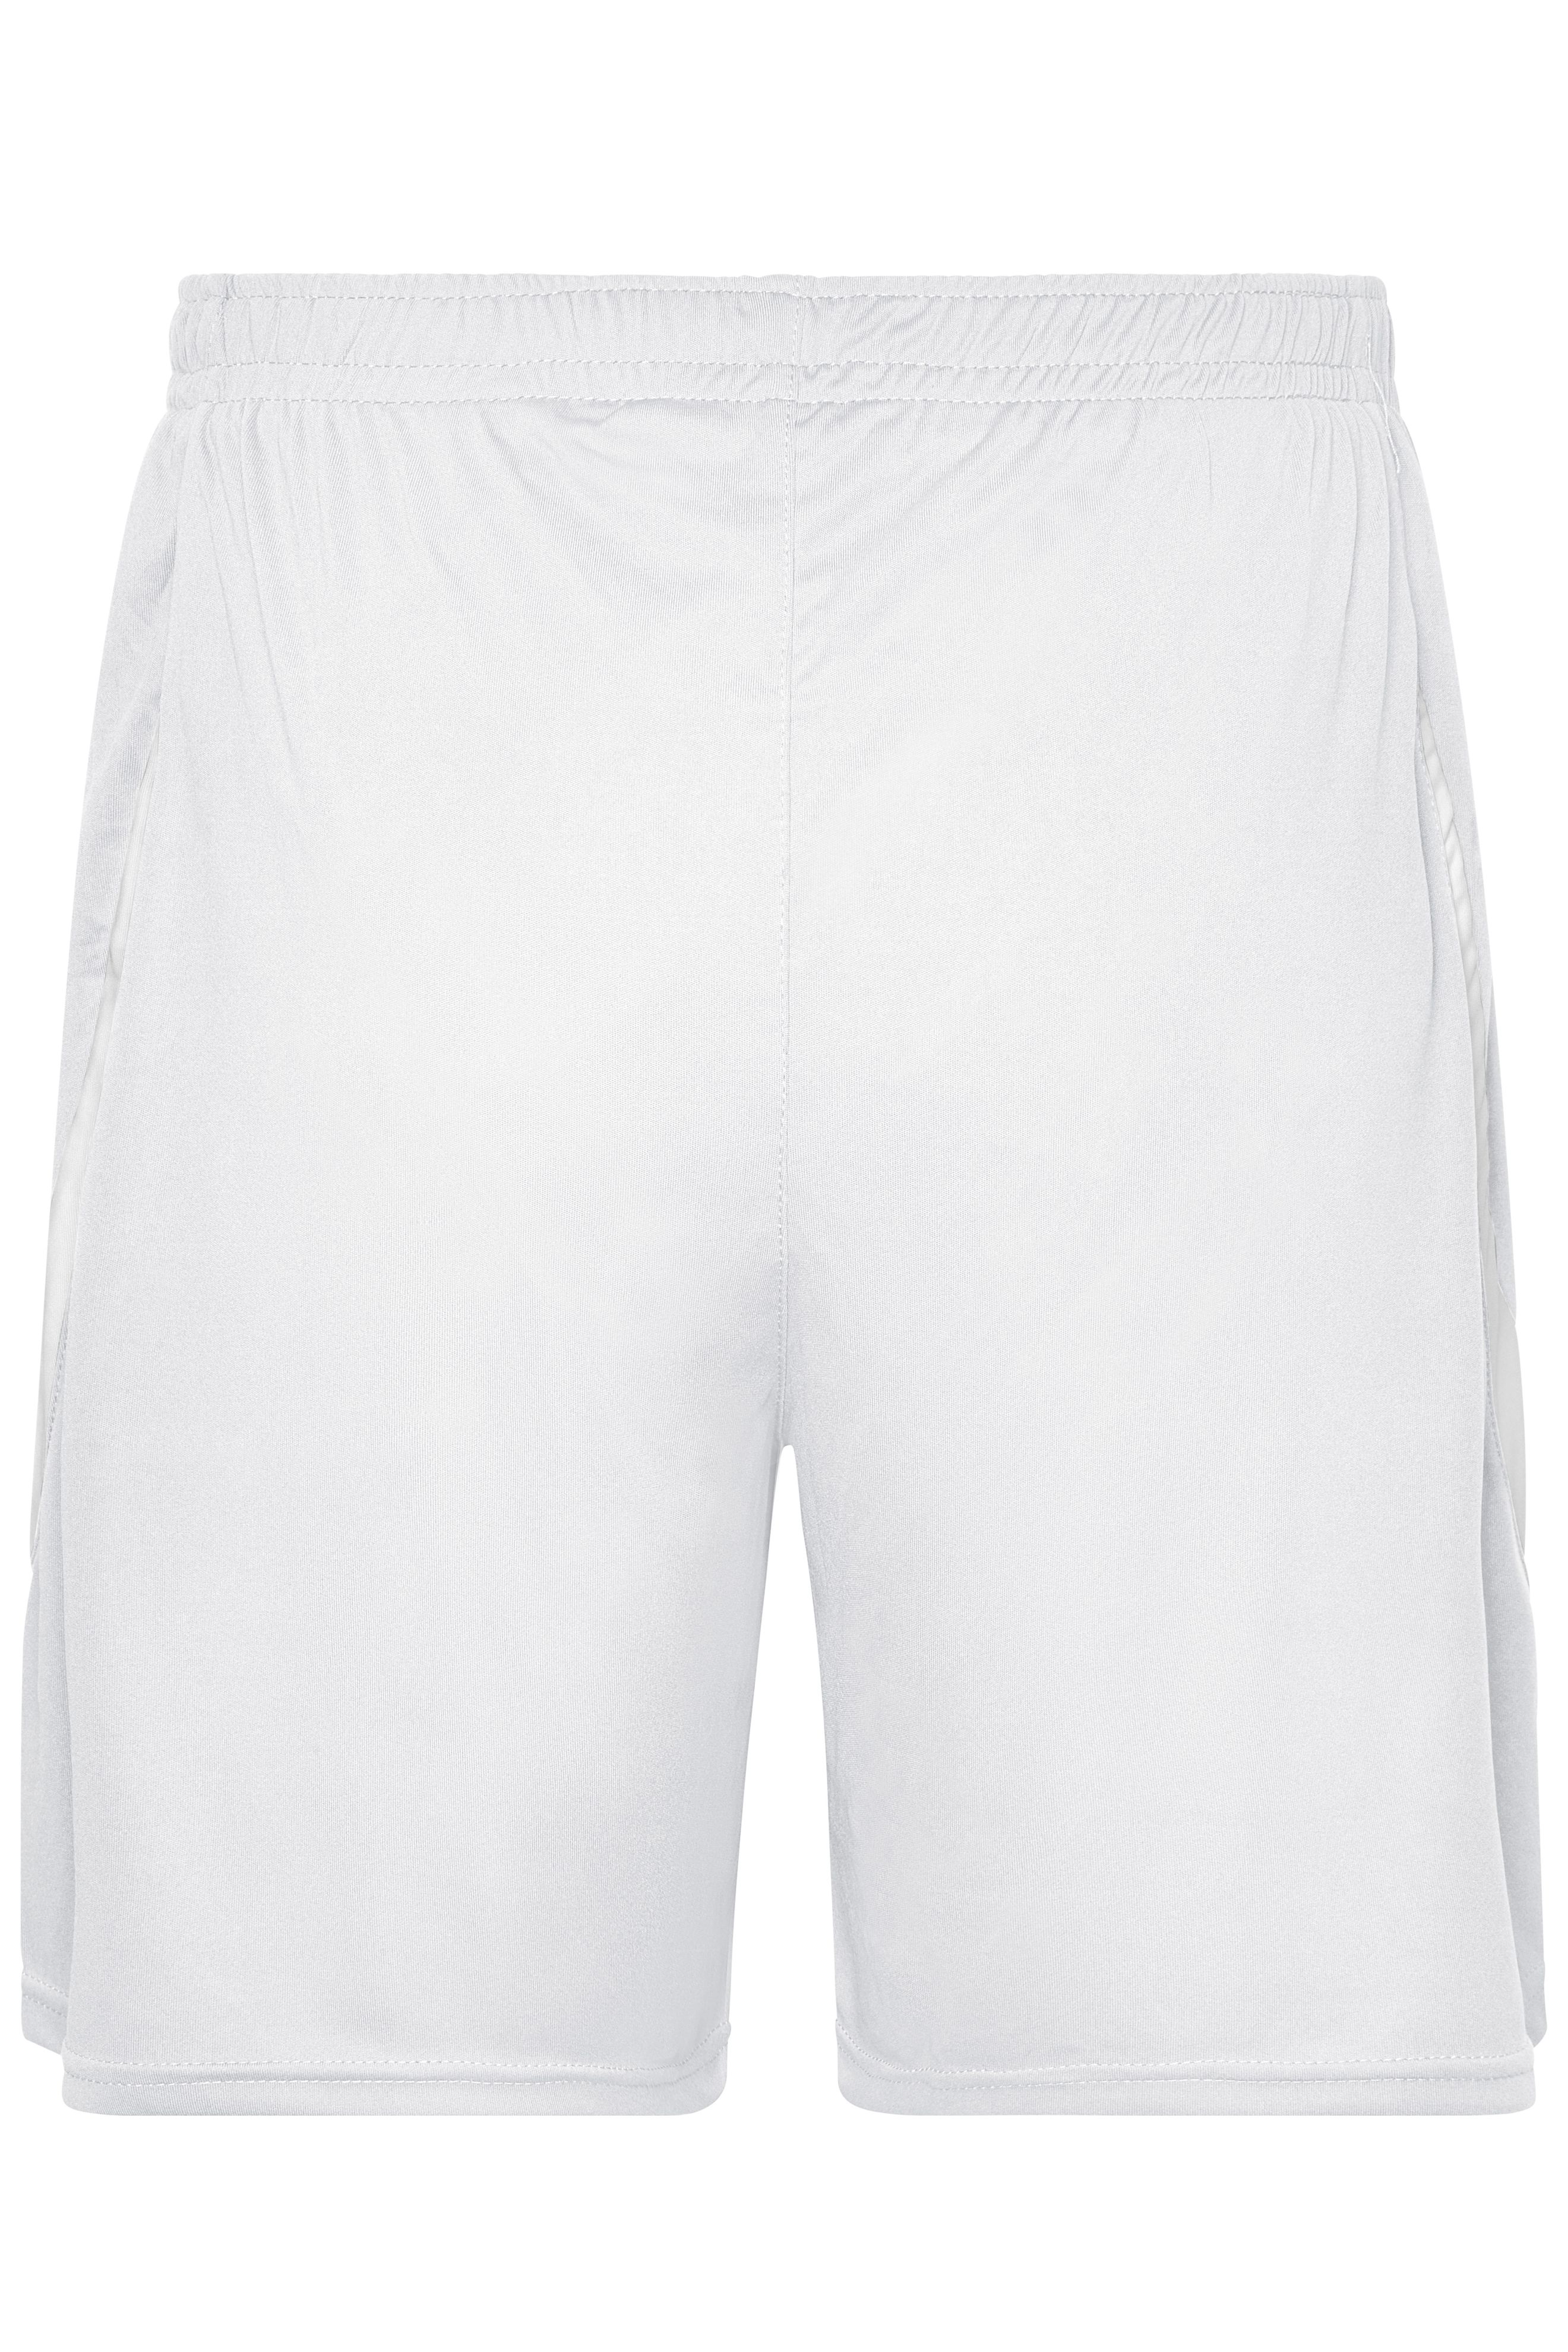 Unisex Tournament Team-Shorts White/white-Daiber